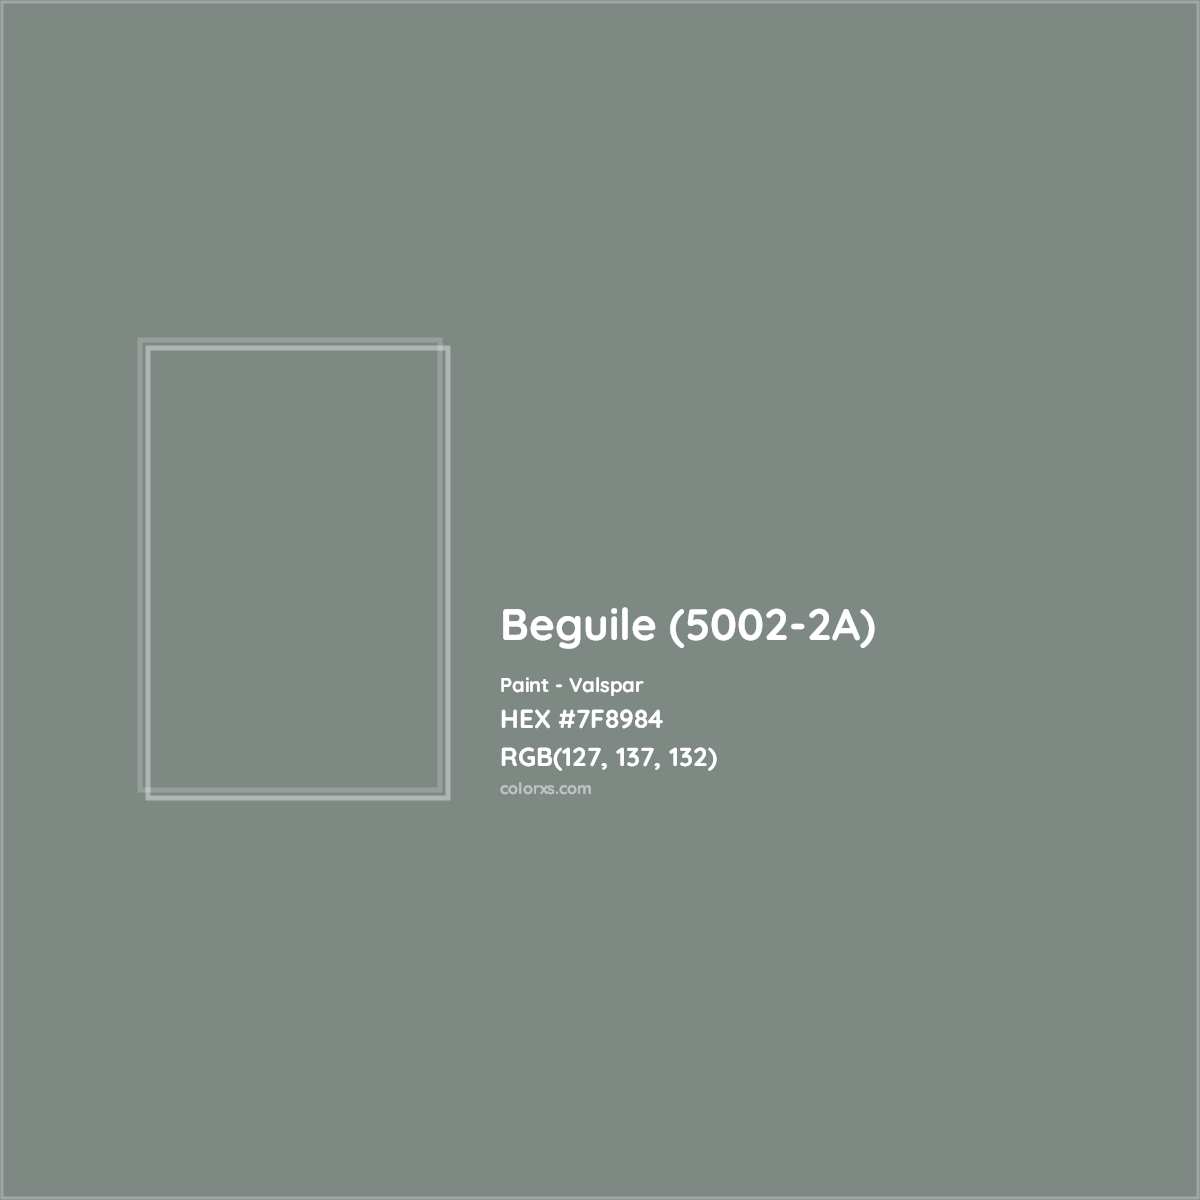 HEX #7F8984 Beguile (5002-2A) Paint Valspar - Color Code